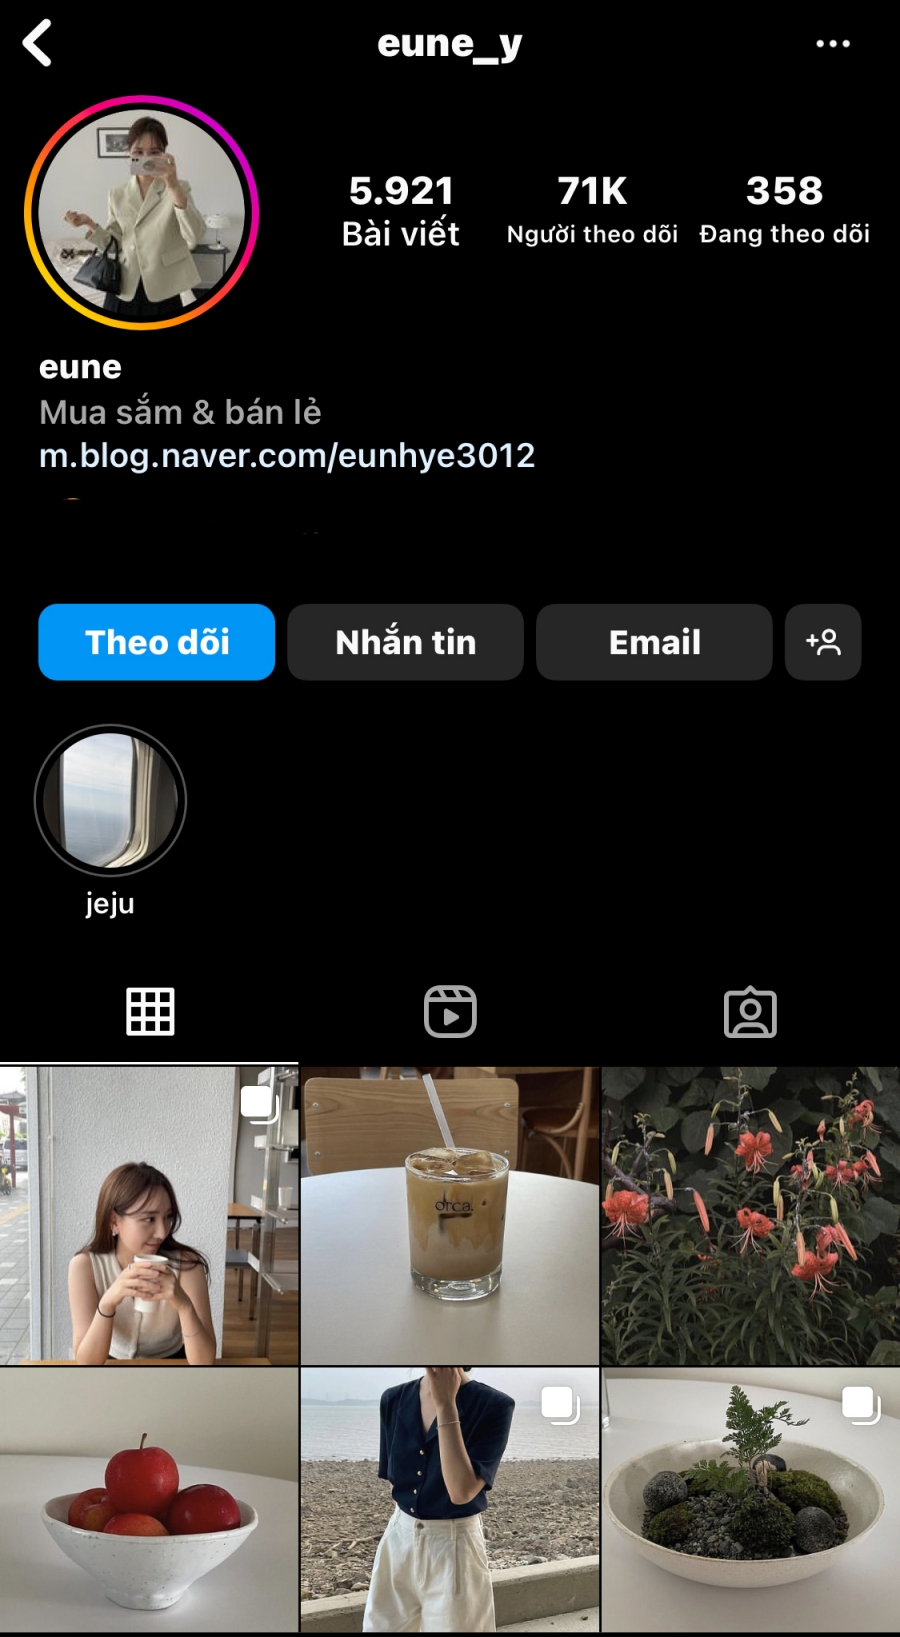 Nhìn vào Instagram hơn 70 nghìn lượt theo dõi của @eune_y, chúng ta có thể thấy cô nàng yêu thích phong cách tối giản và tông màu trung tính. 